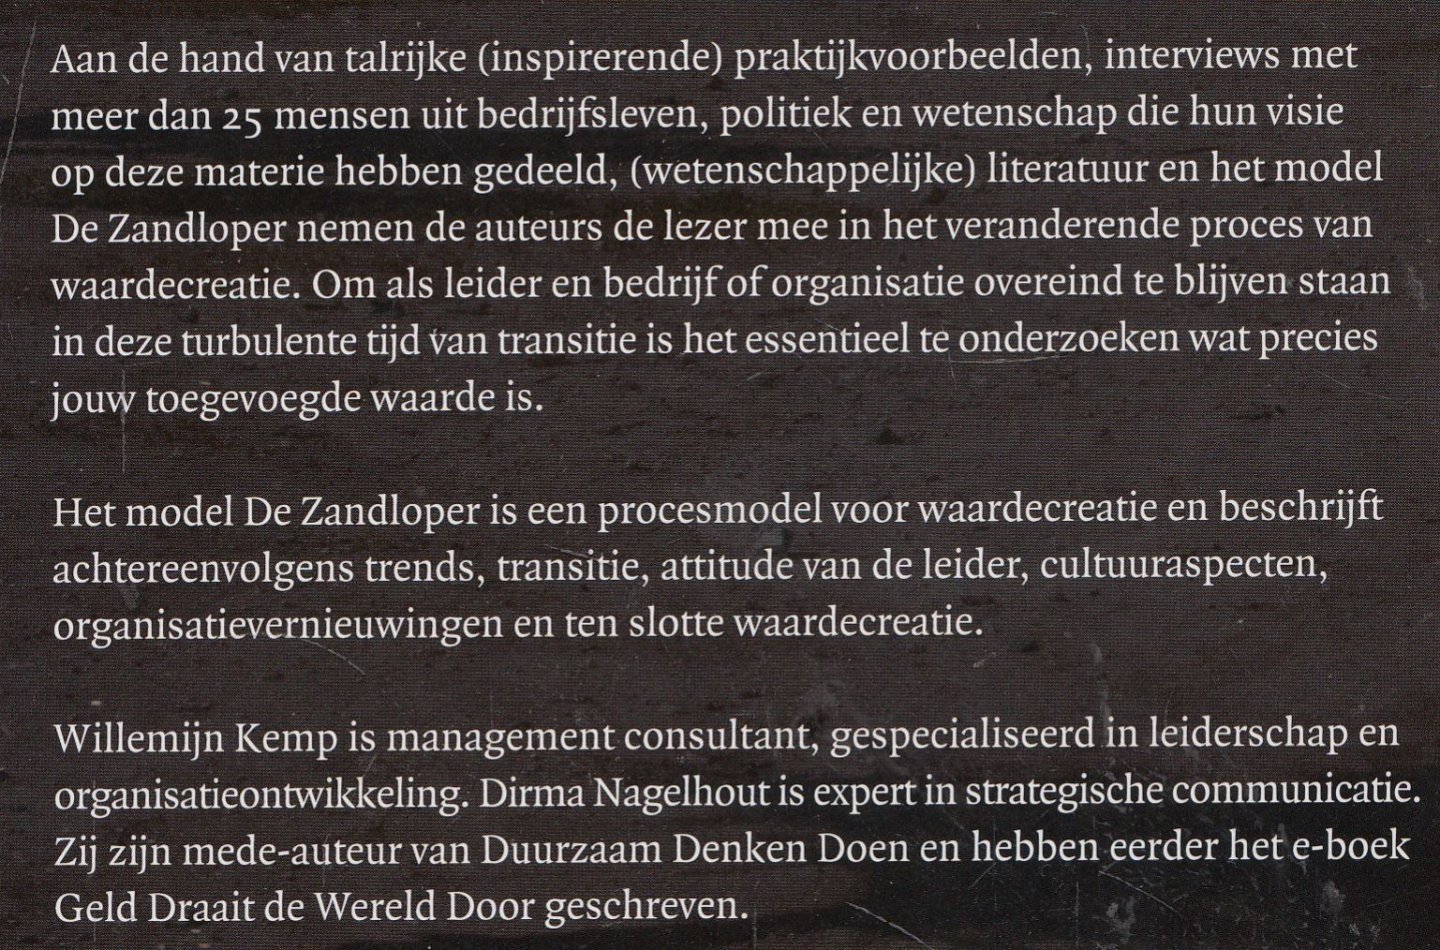 Kemp MMC, Willemijn; Nagelhout, Dirma - De zandloper - leiderschap in tijden van transitie